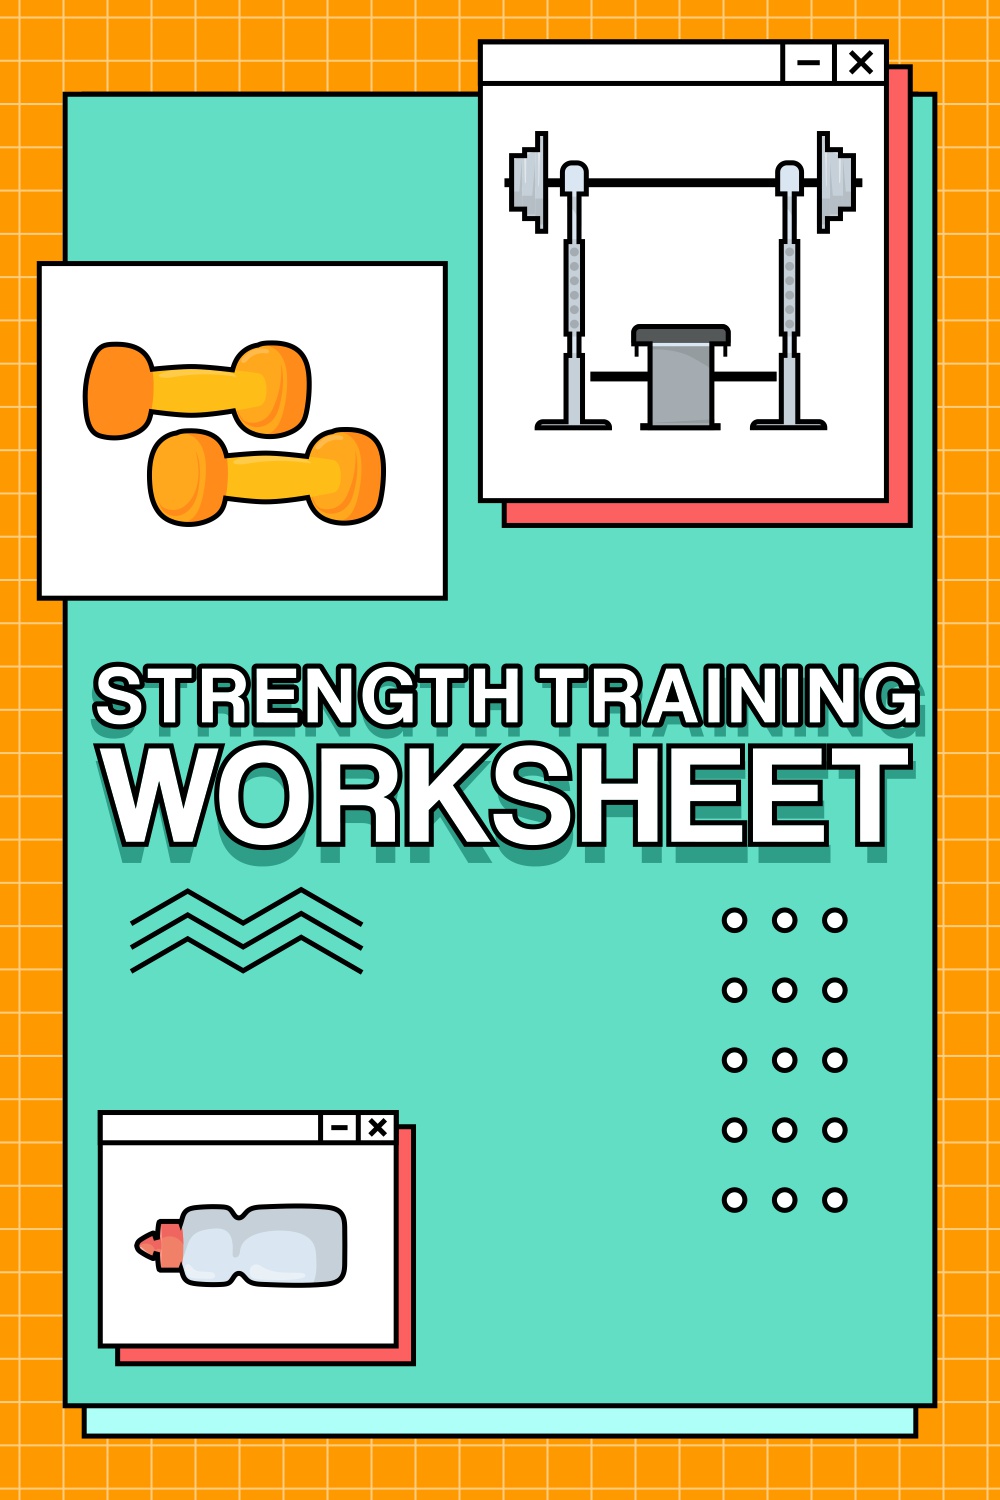 7 Strength Training Worksheet Free PDF At Worksheeto